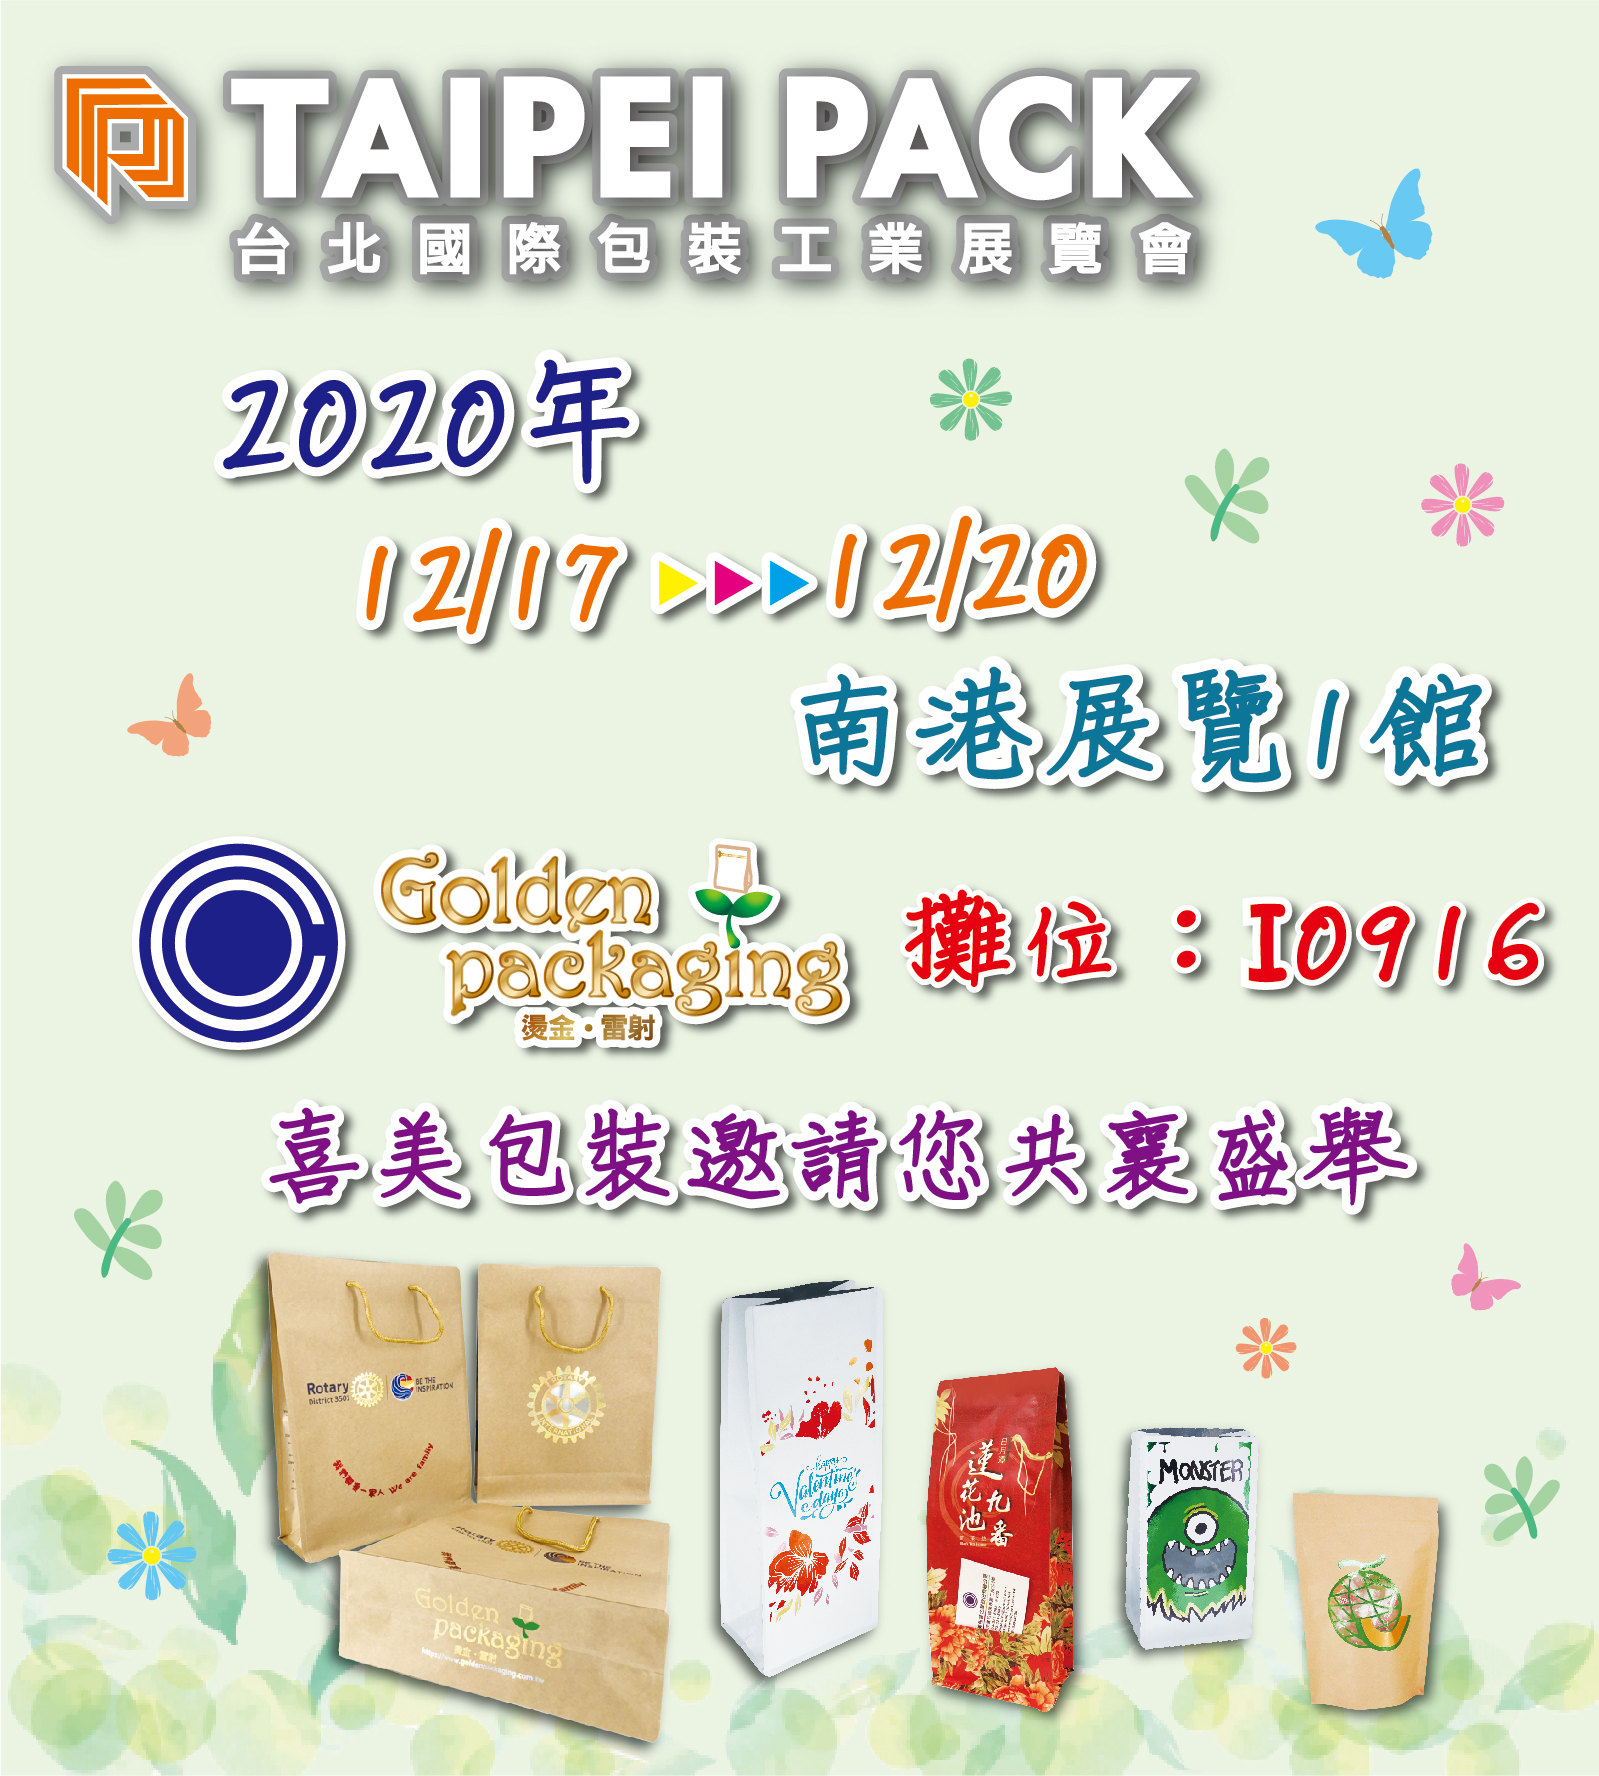 2020年12月17日至20日台北國際包裝工業展覽會